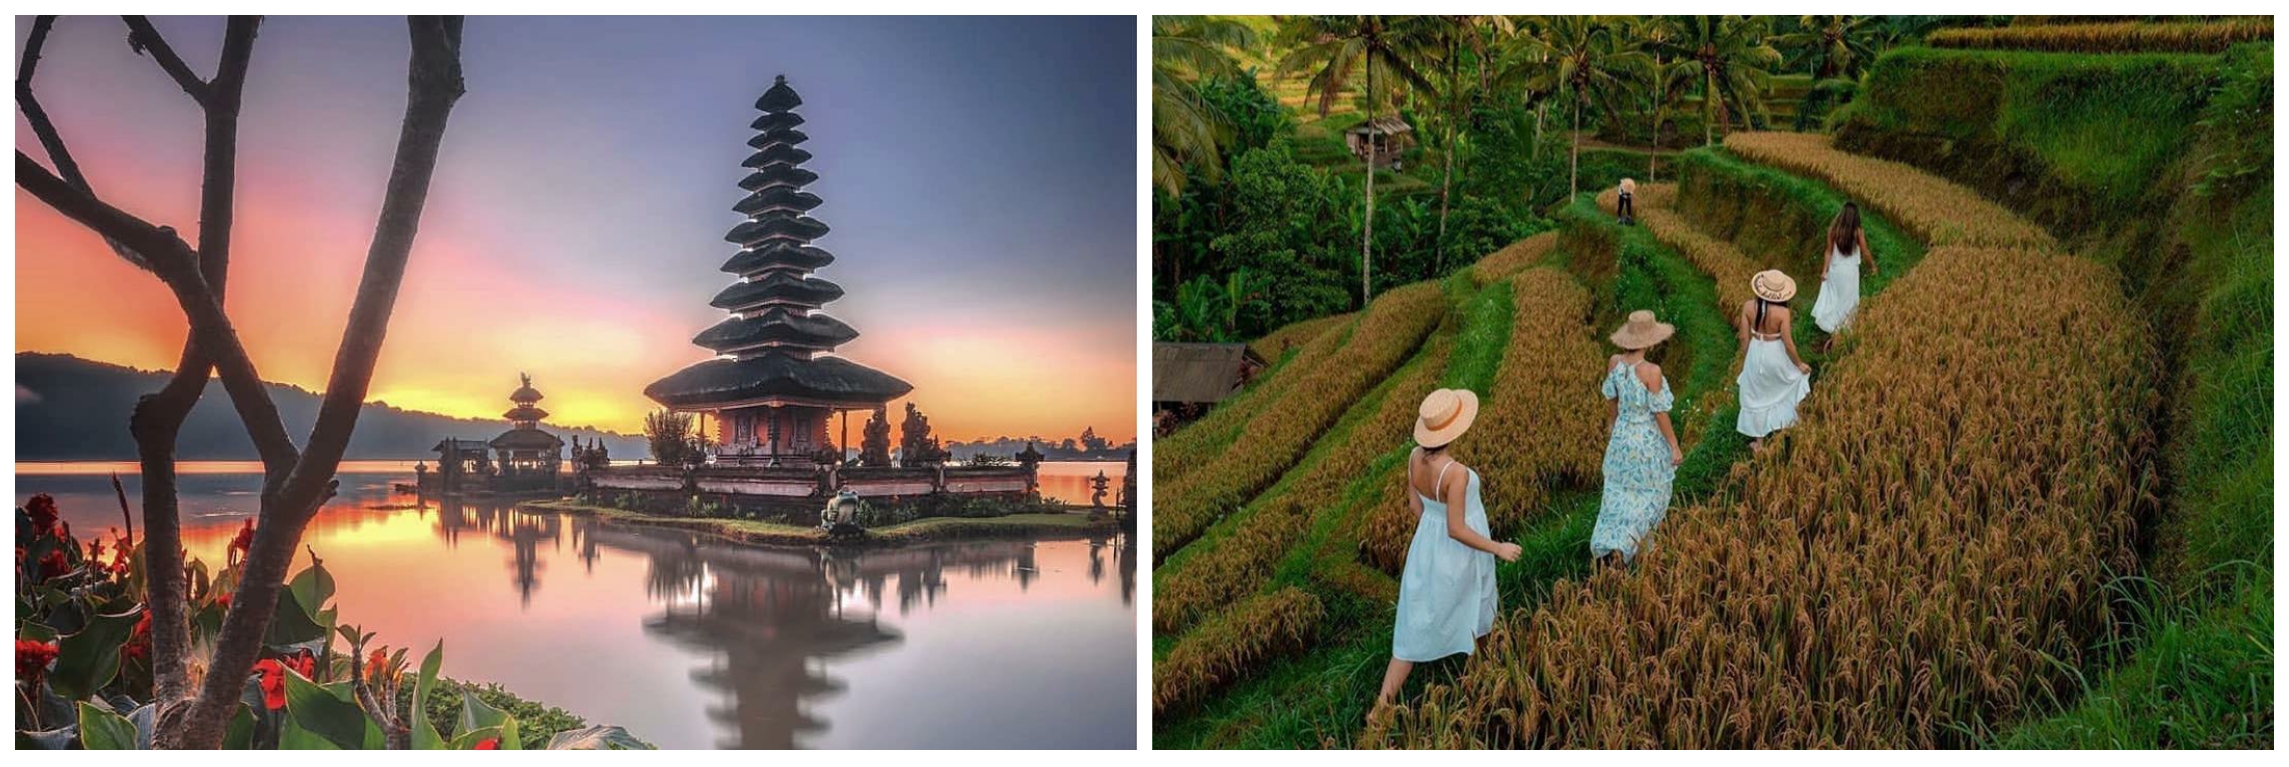 8 Tempat wisata Bali yang sudah buka selama era new normal